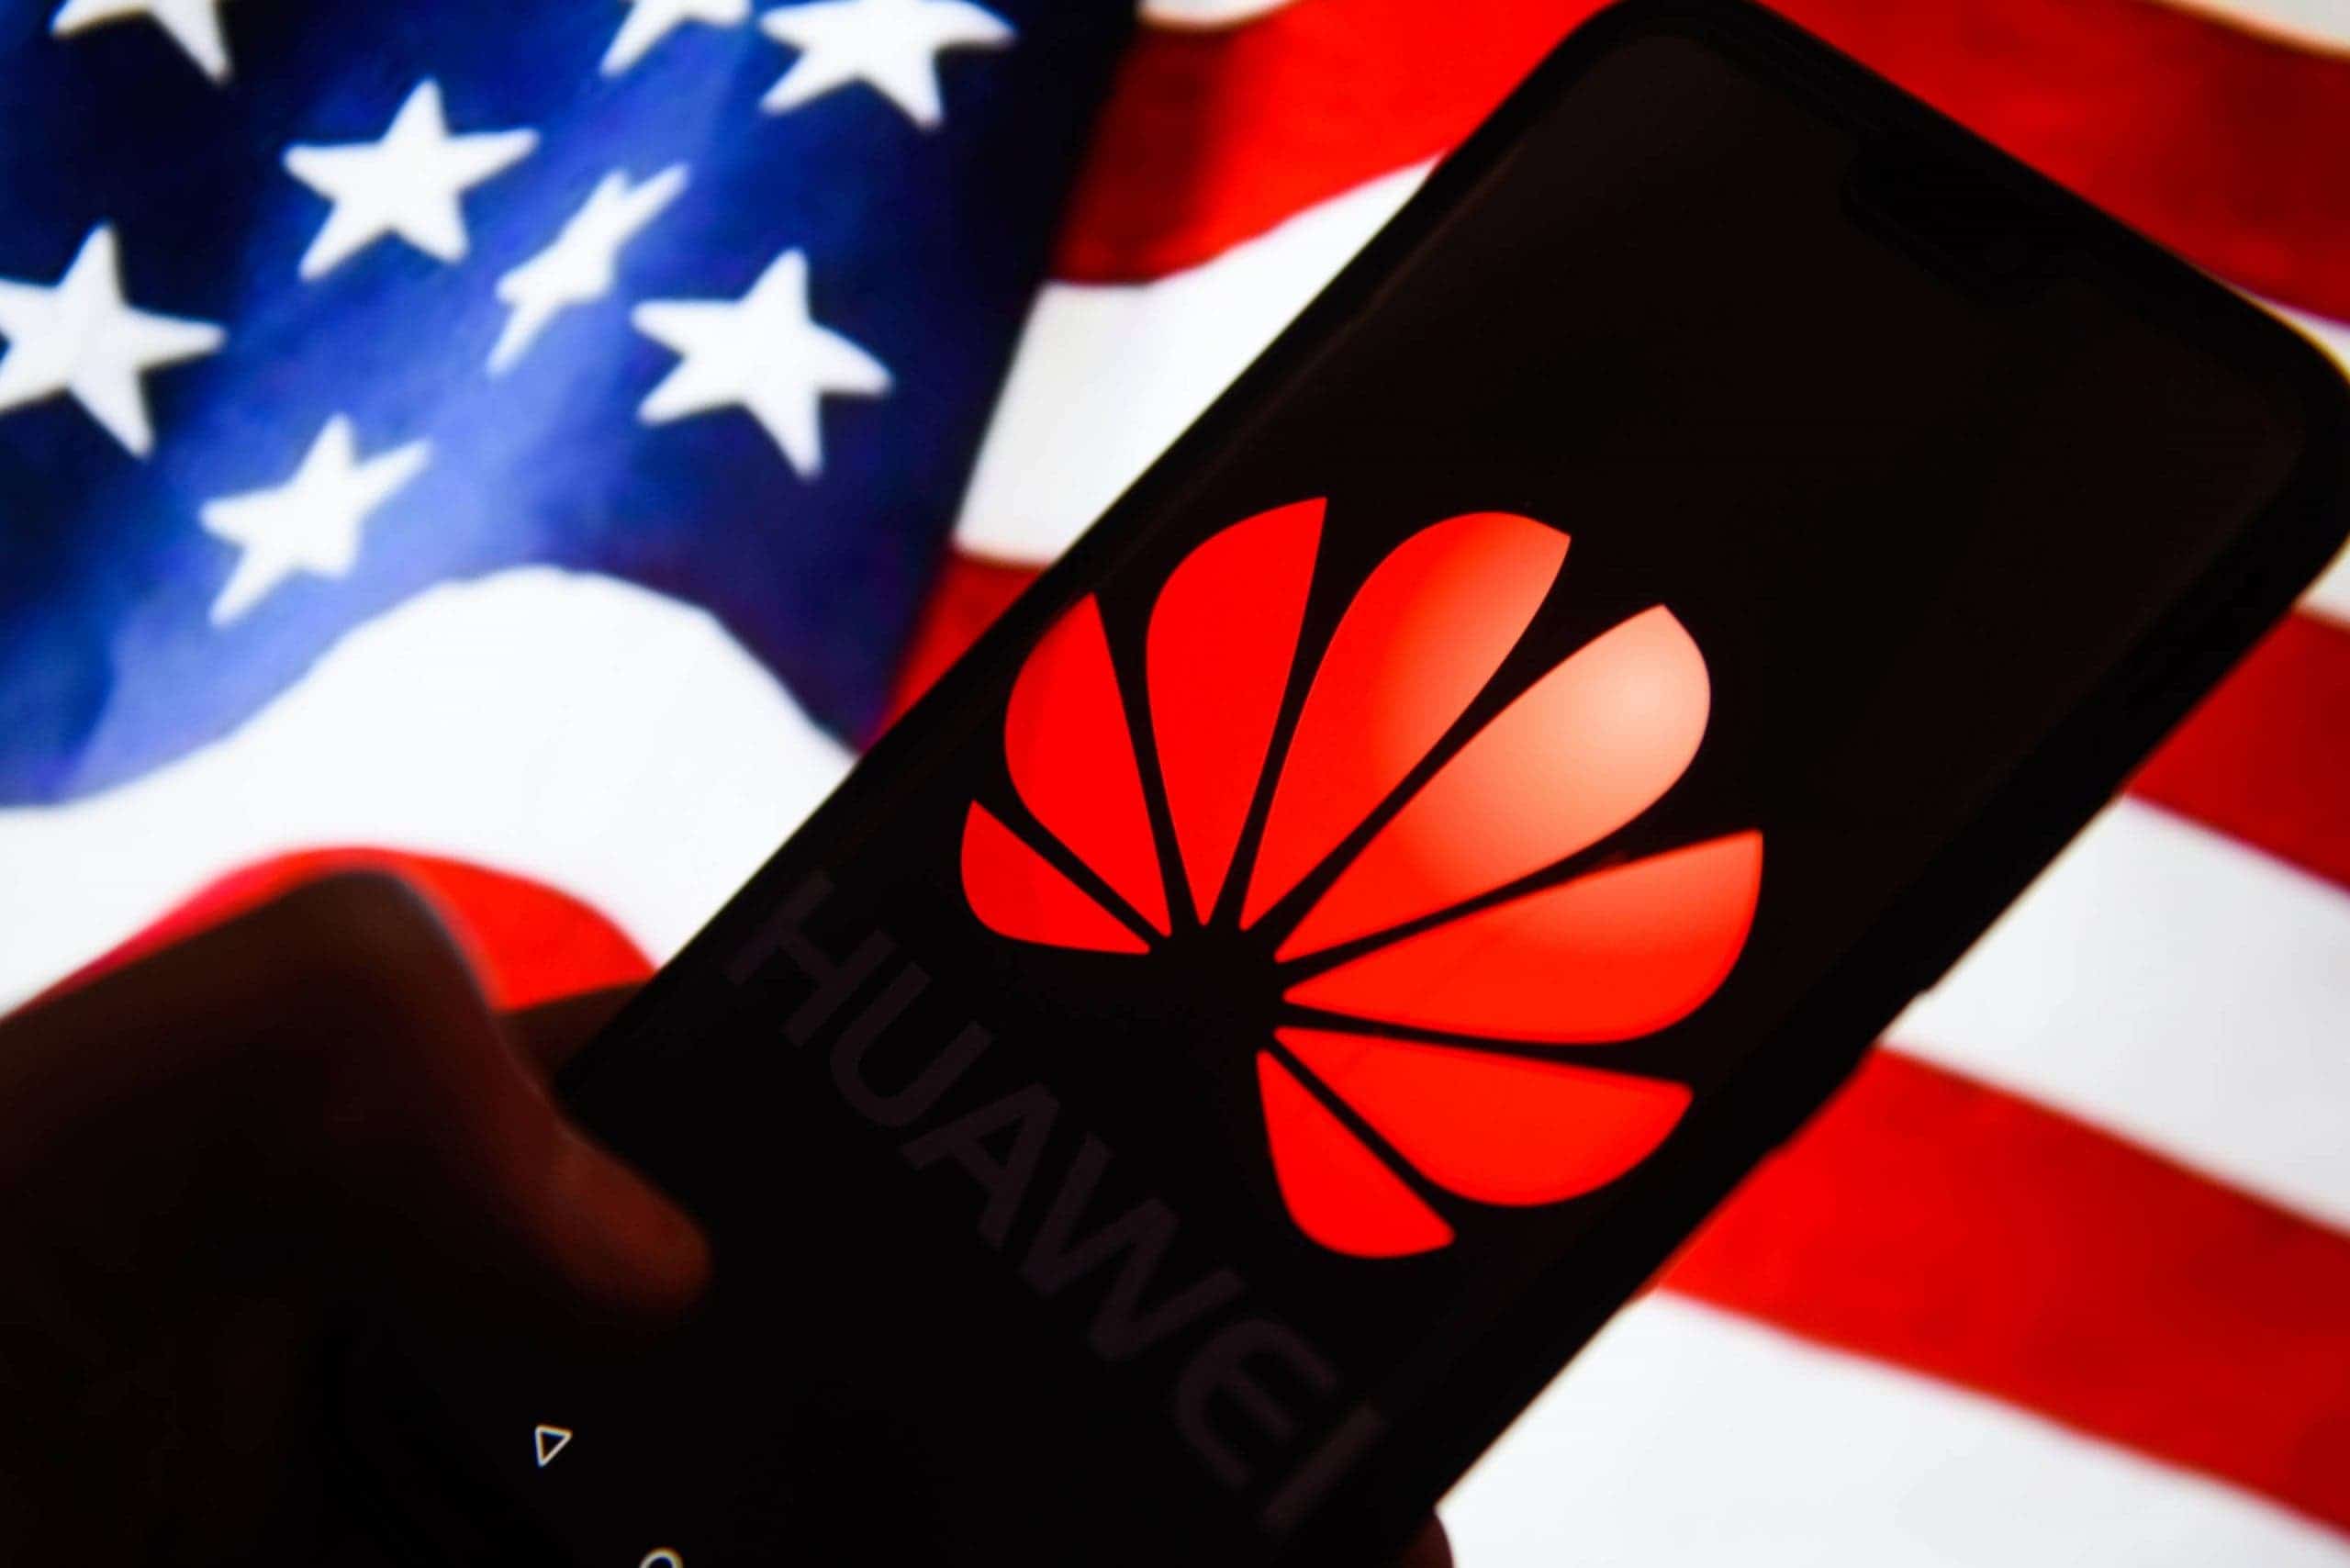 Huawei строит собственное производство процессоров без американского оборудования и материалов - cnews